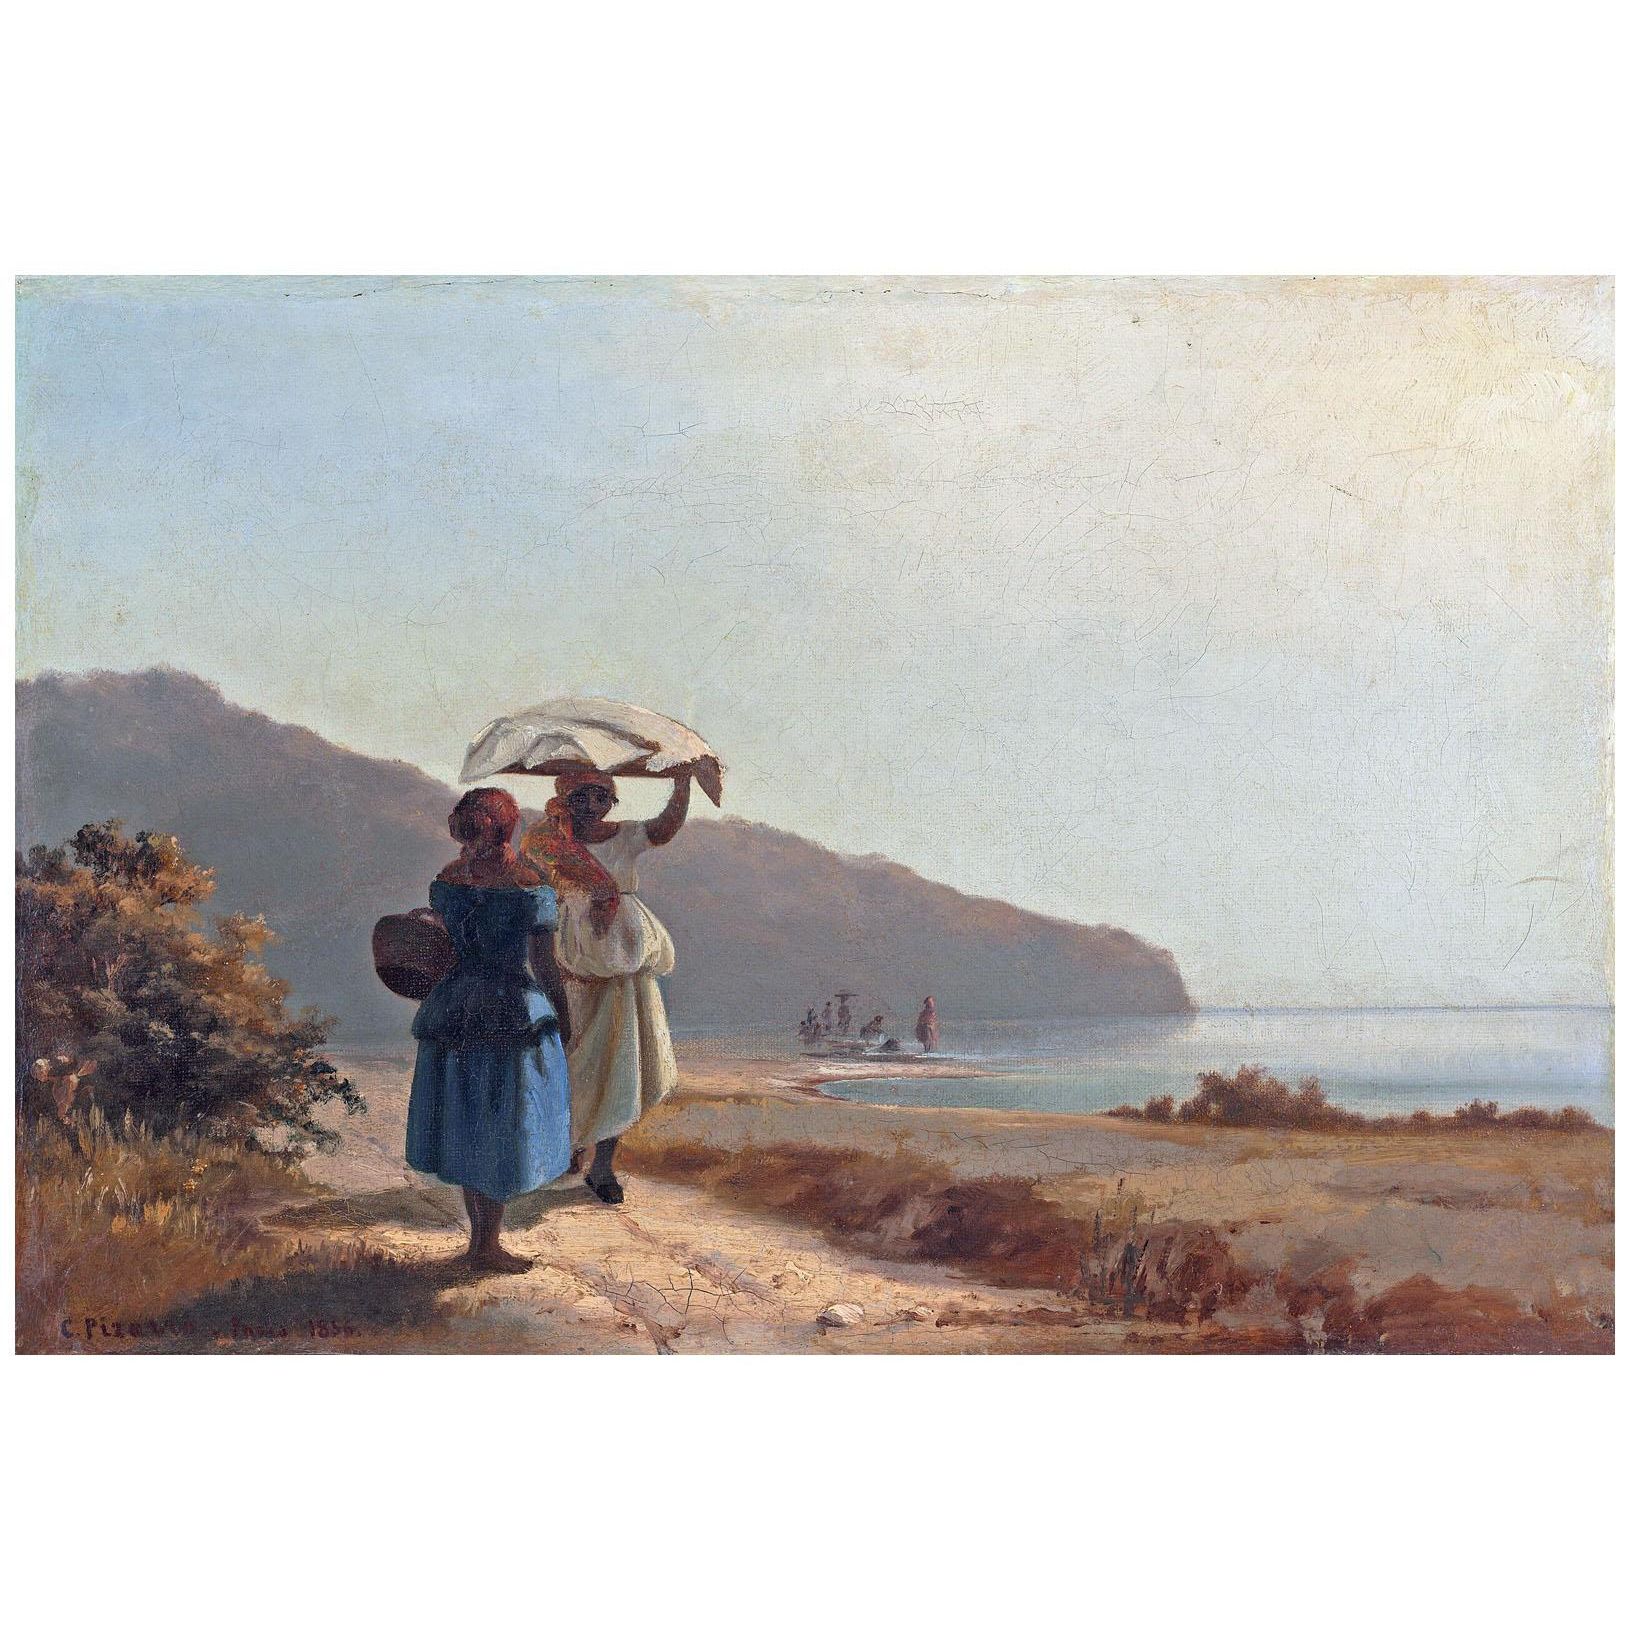 Camille Pissarro. Deux femmes causant au bord de la mer. 1856. NGA Washington